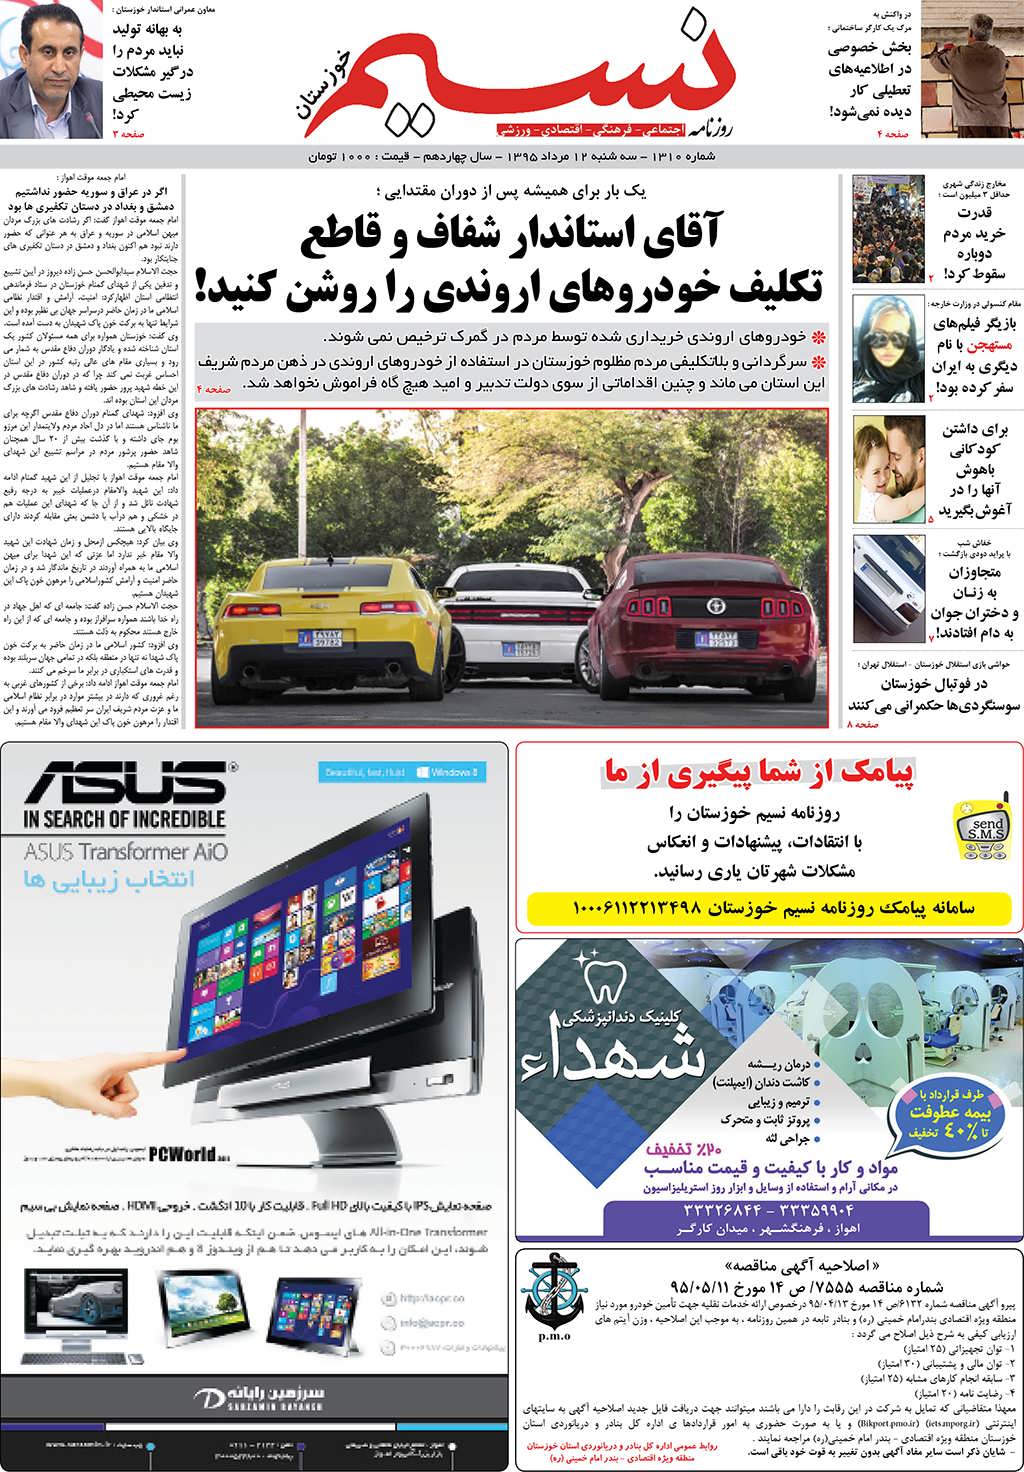 صفحه اصلی روزنامه نسیم شماره 1310